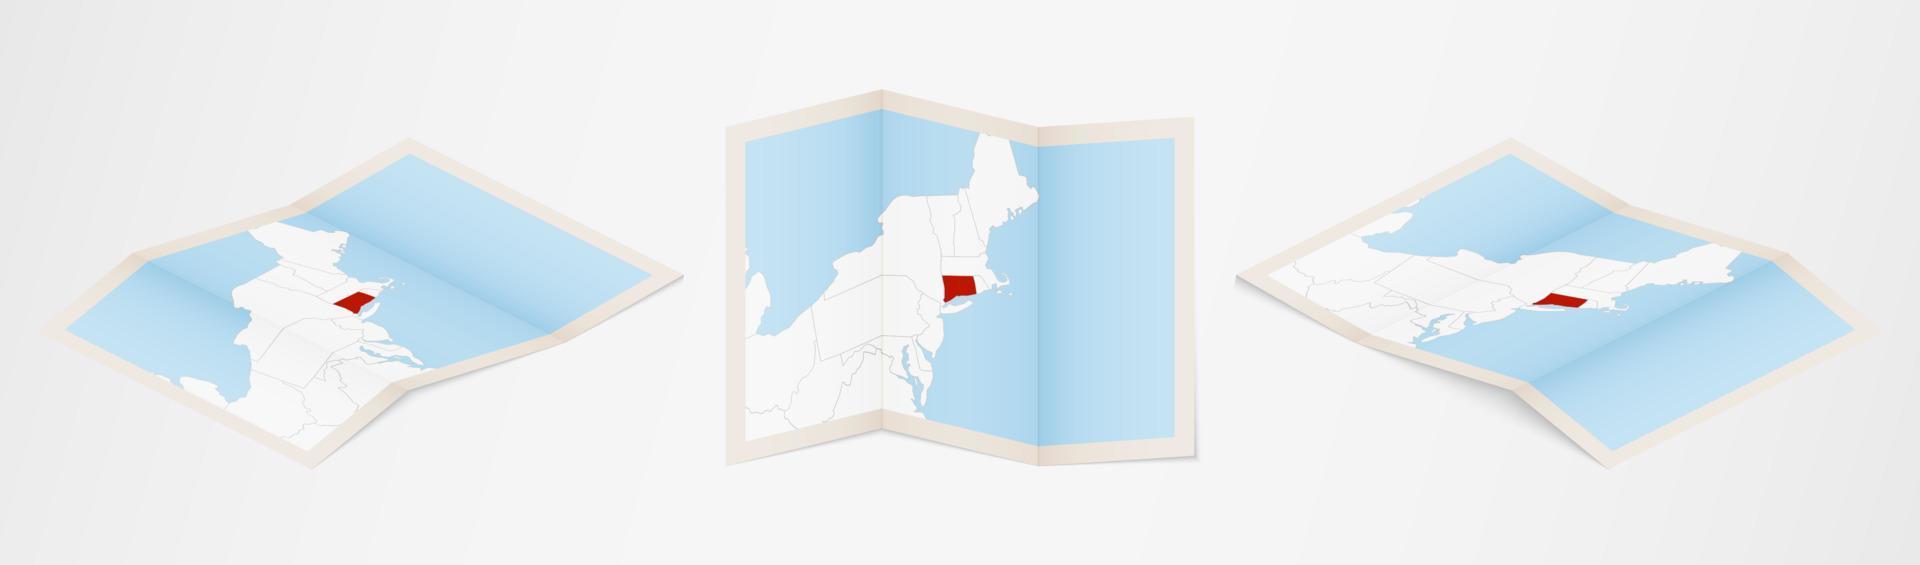 Faltkarte von Connecticut in drei verschiedenen Versionen. vektor